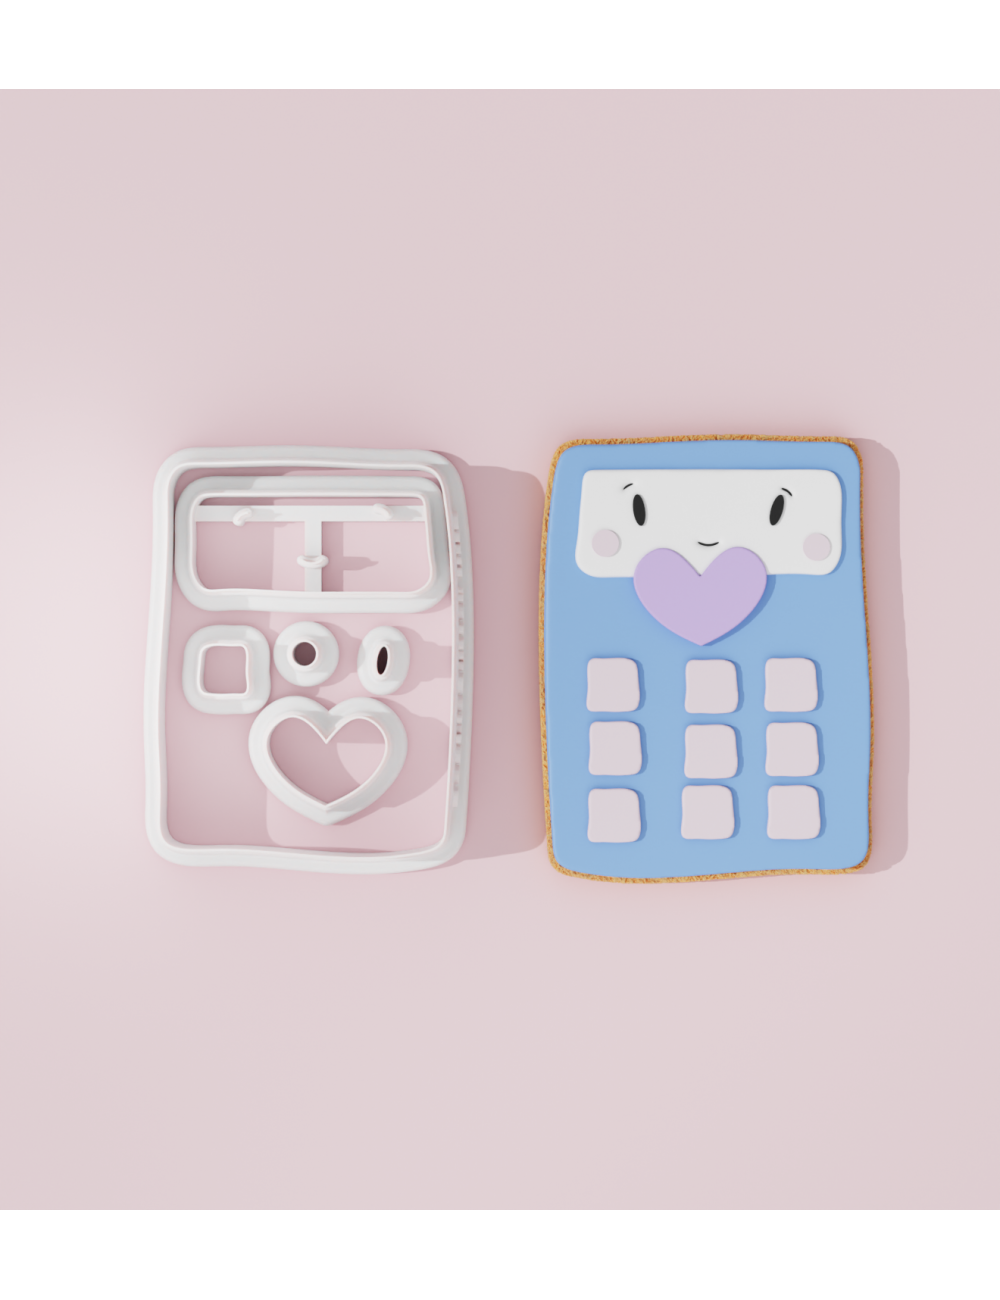 School – Calculator Cookie Cutter